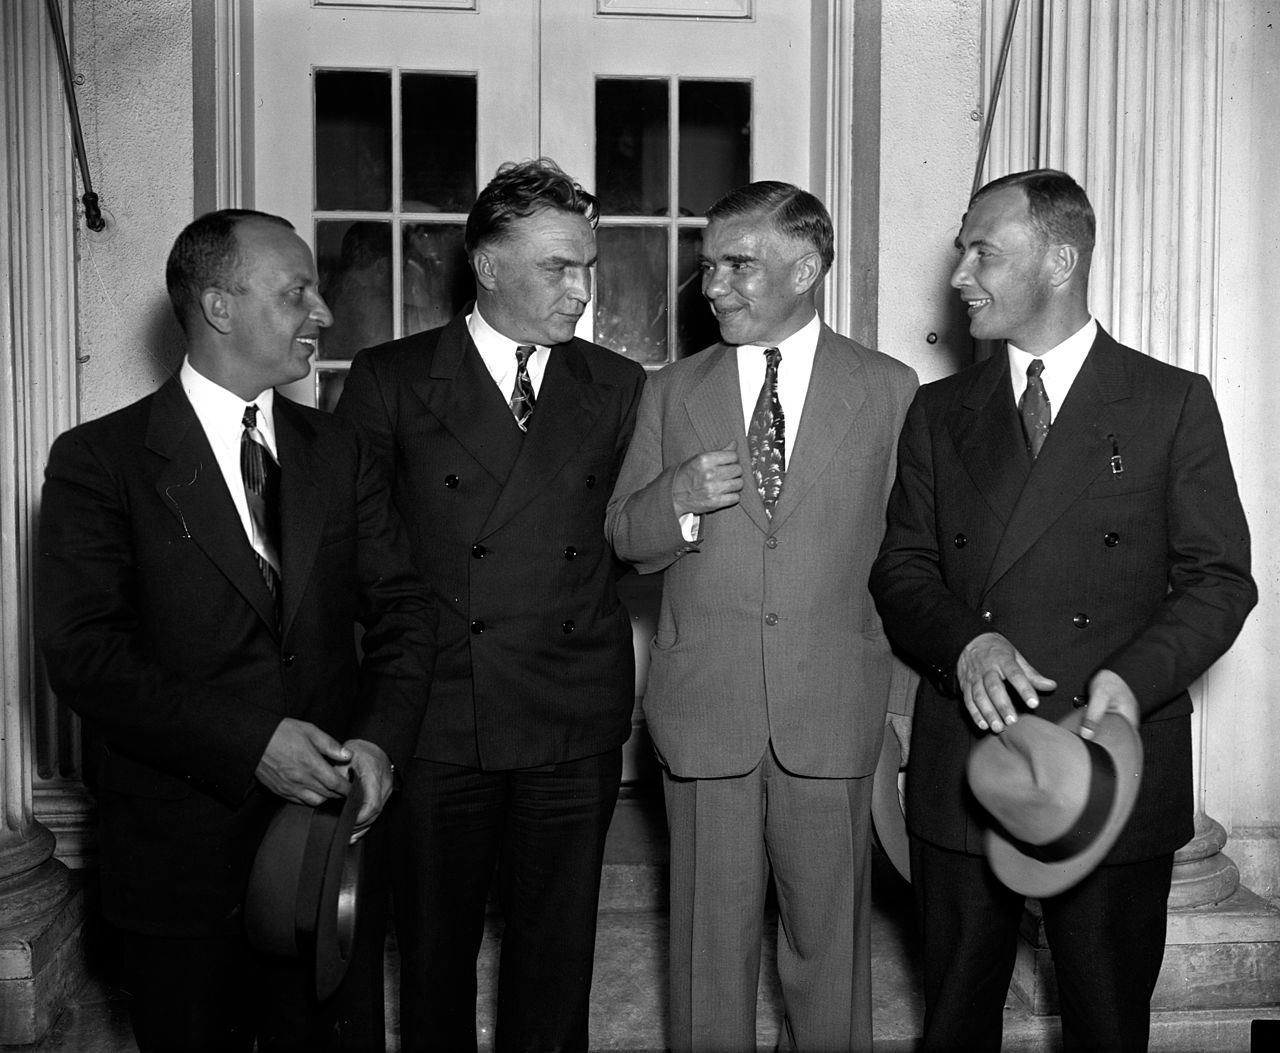 Участники полёта с послом СССР в США Трояновским, 1937 год